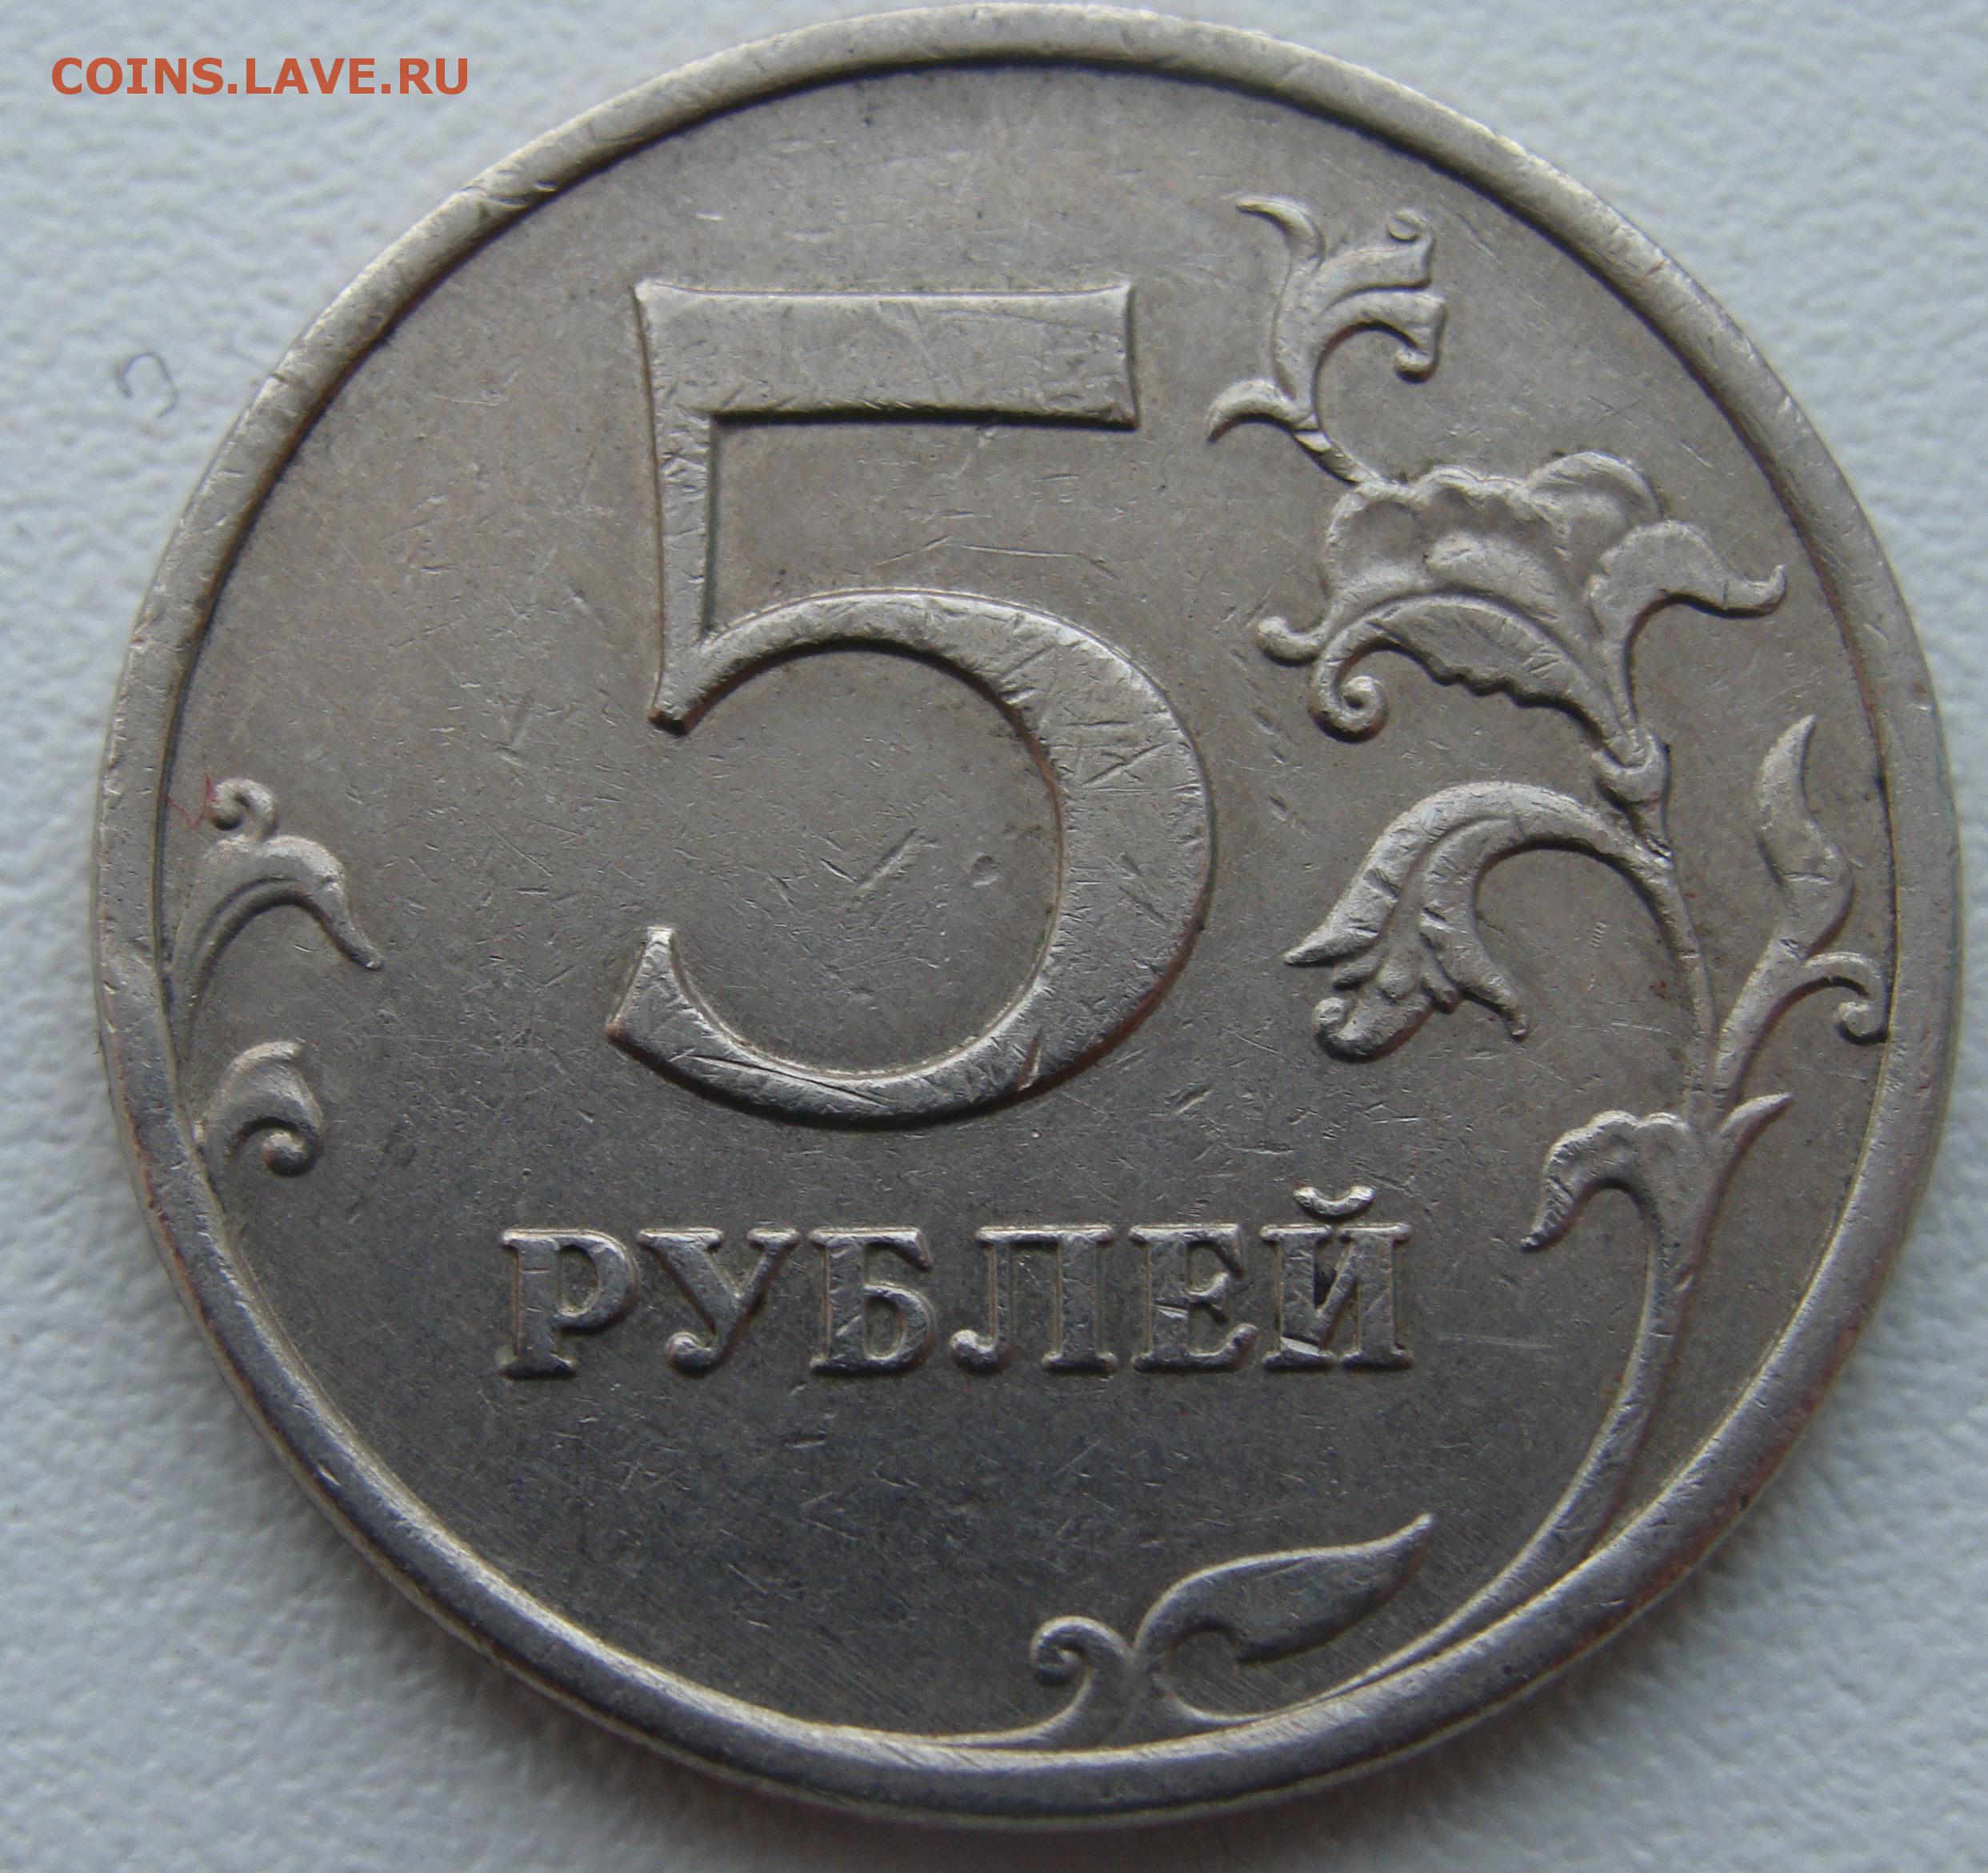 5 рублей 13 года. 5 Рублей 1998 ММД немагнитная. 5 Рублей 1998 года СПМД. 13 Рублей 1998 года. 5 Рублей 1998 года СПМД брак.